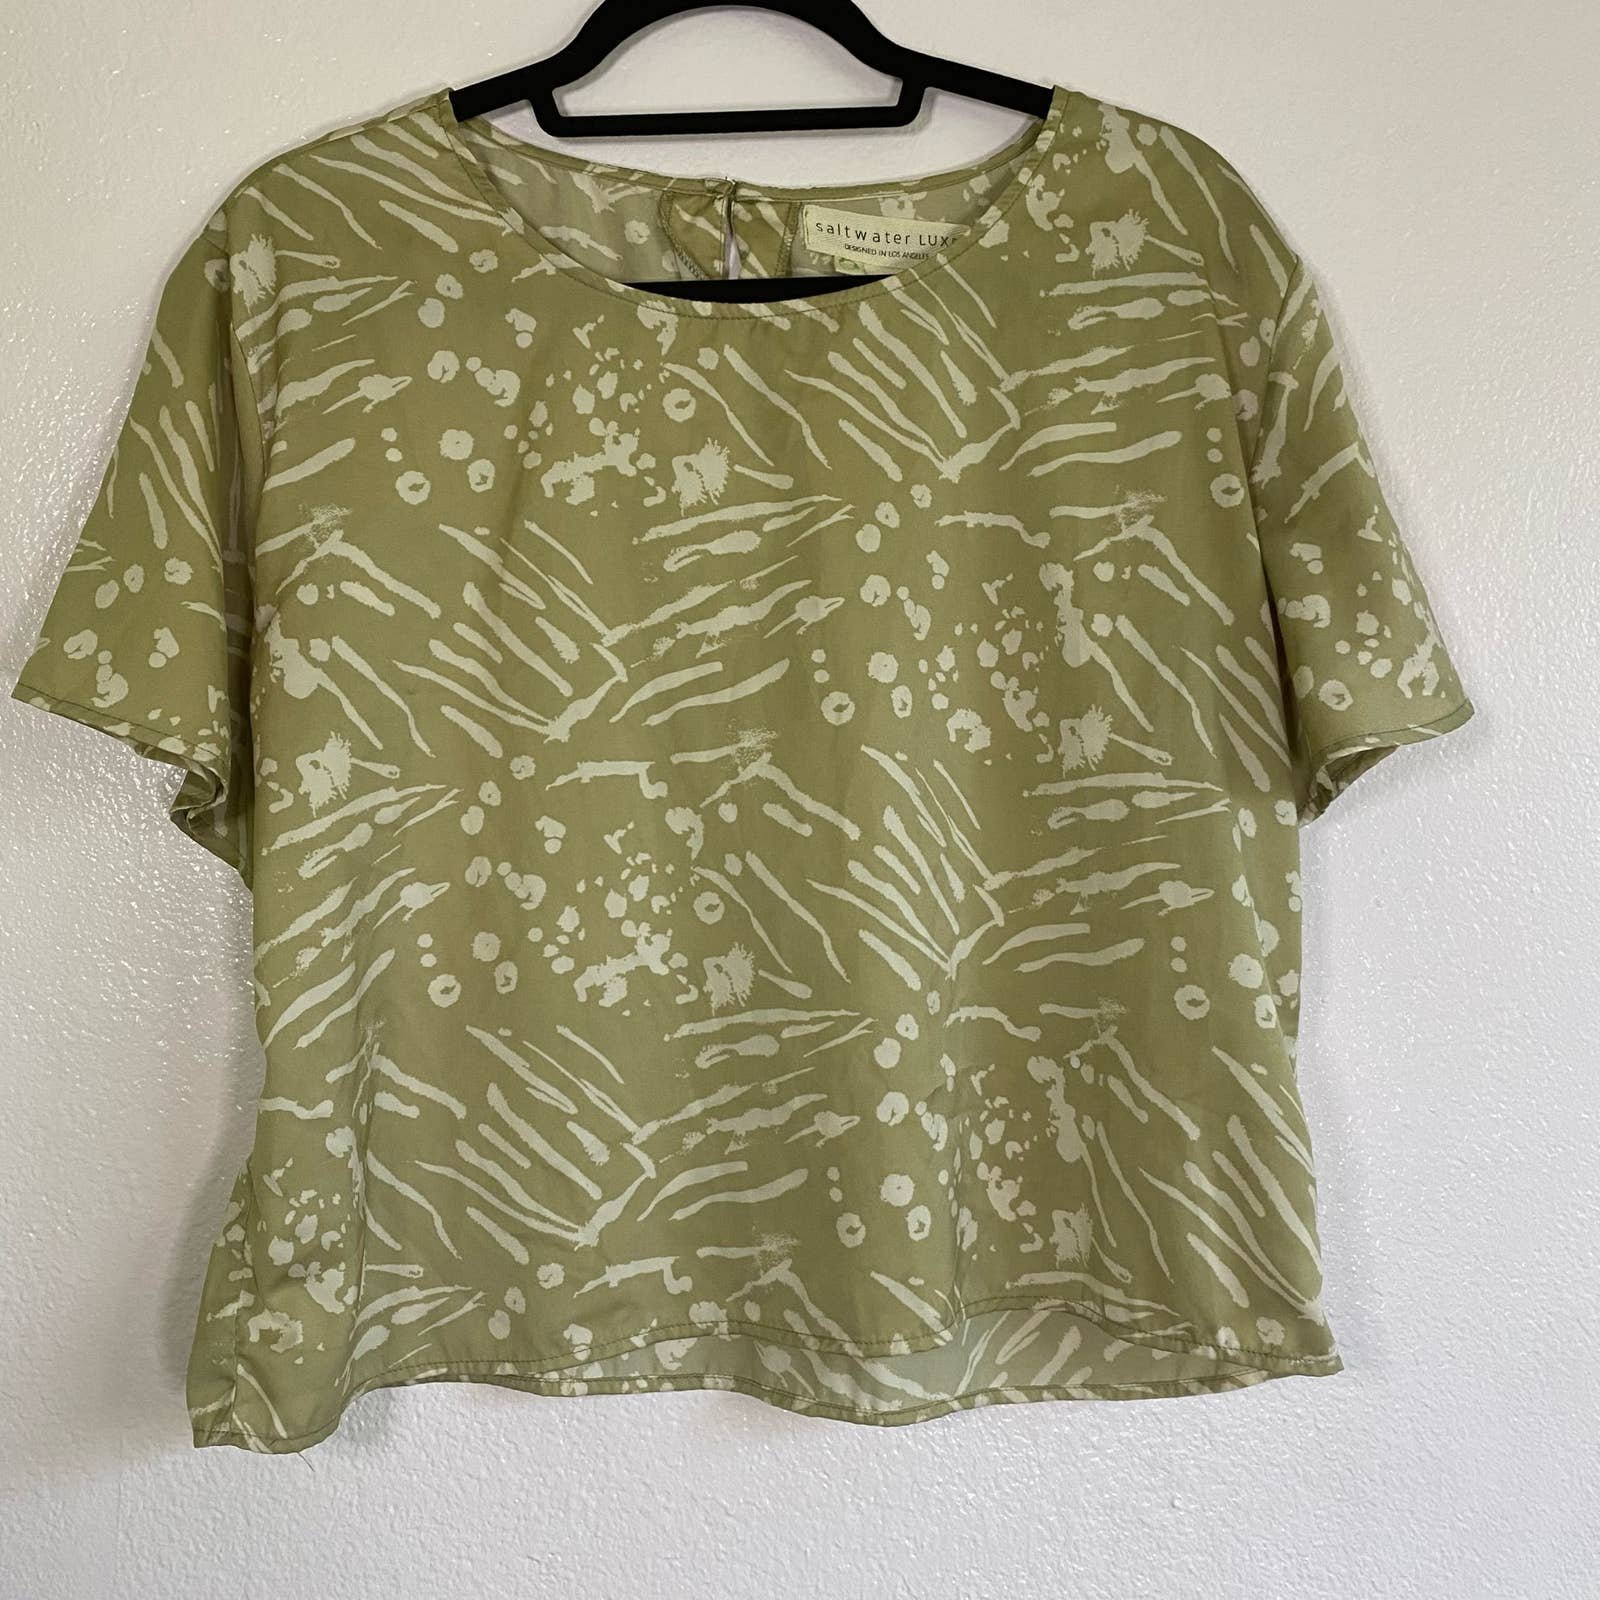 floor price Saltwater Luxe Green Top Shirt Women Size M